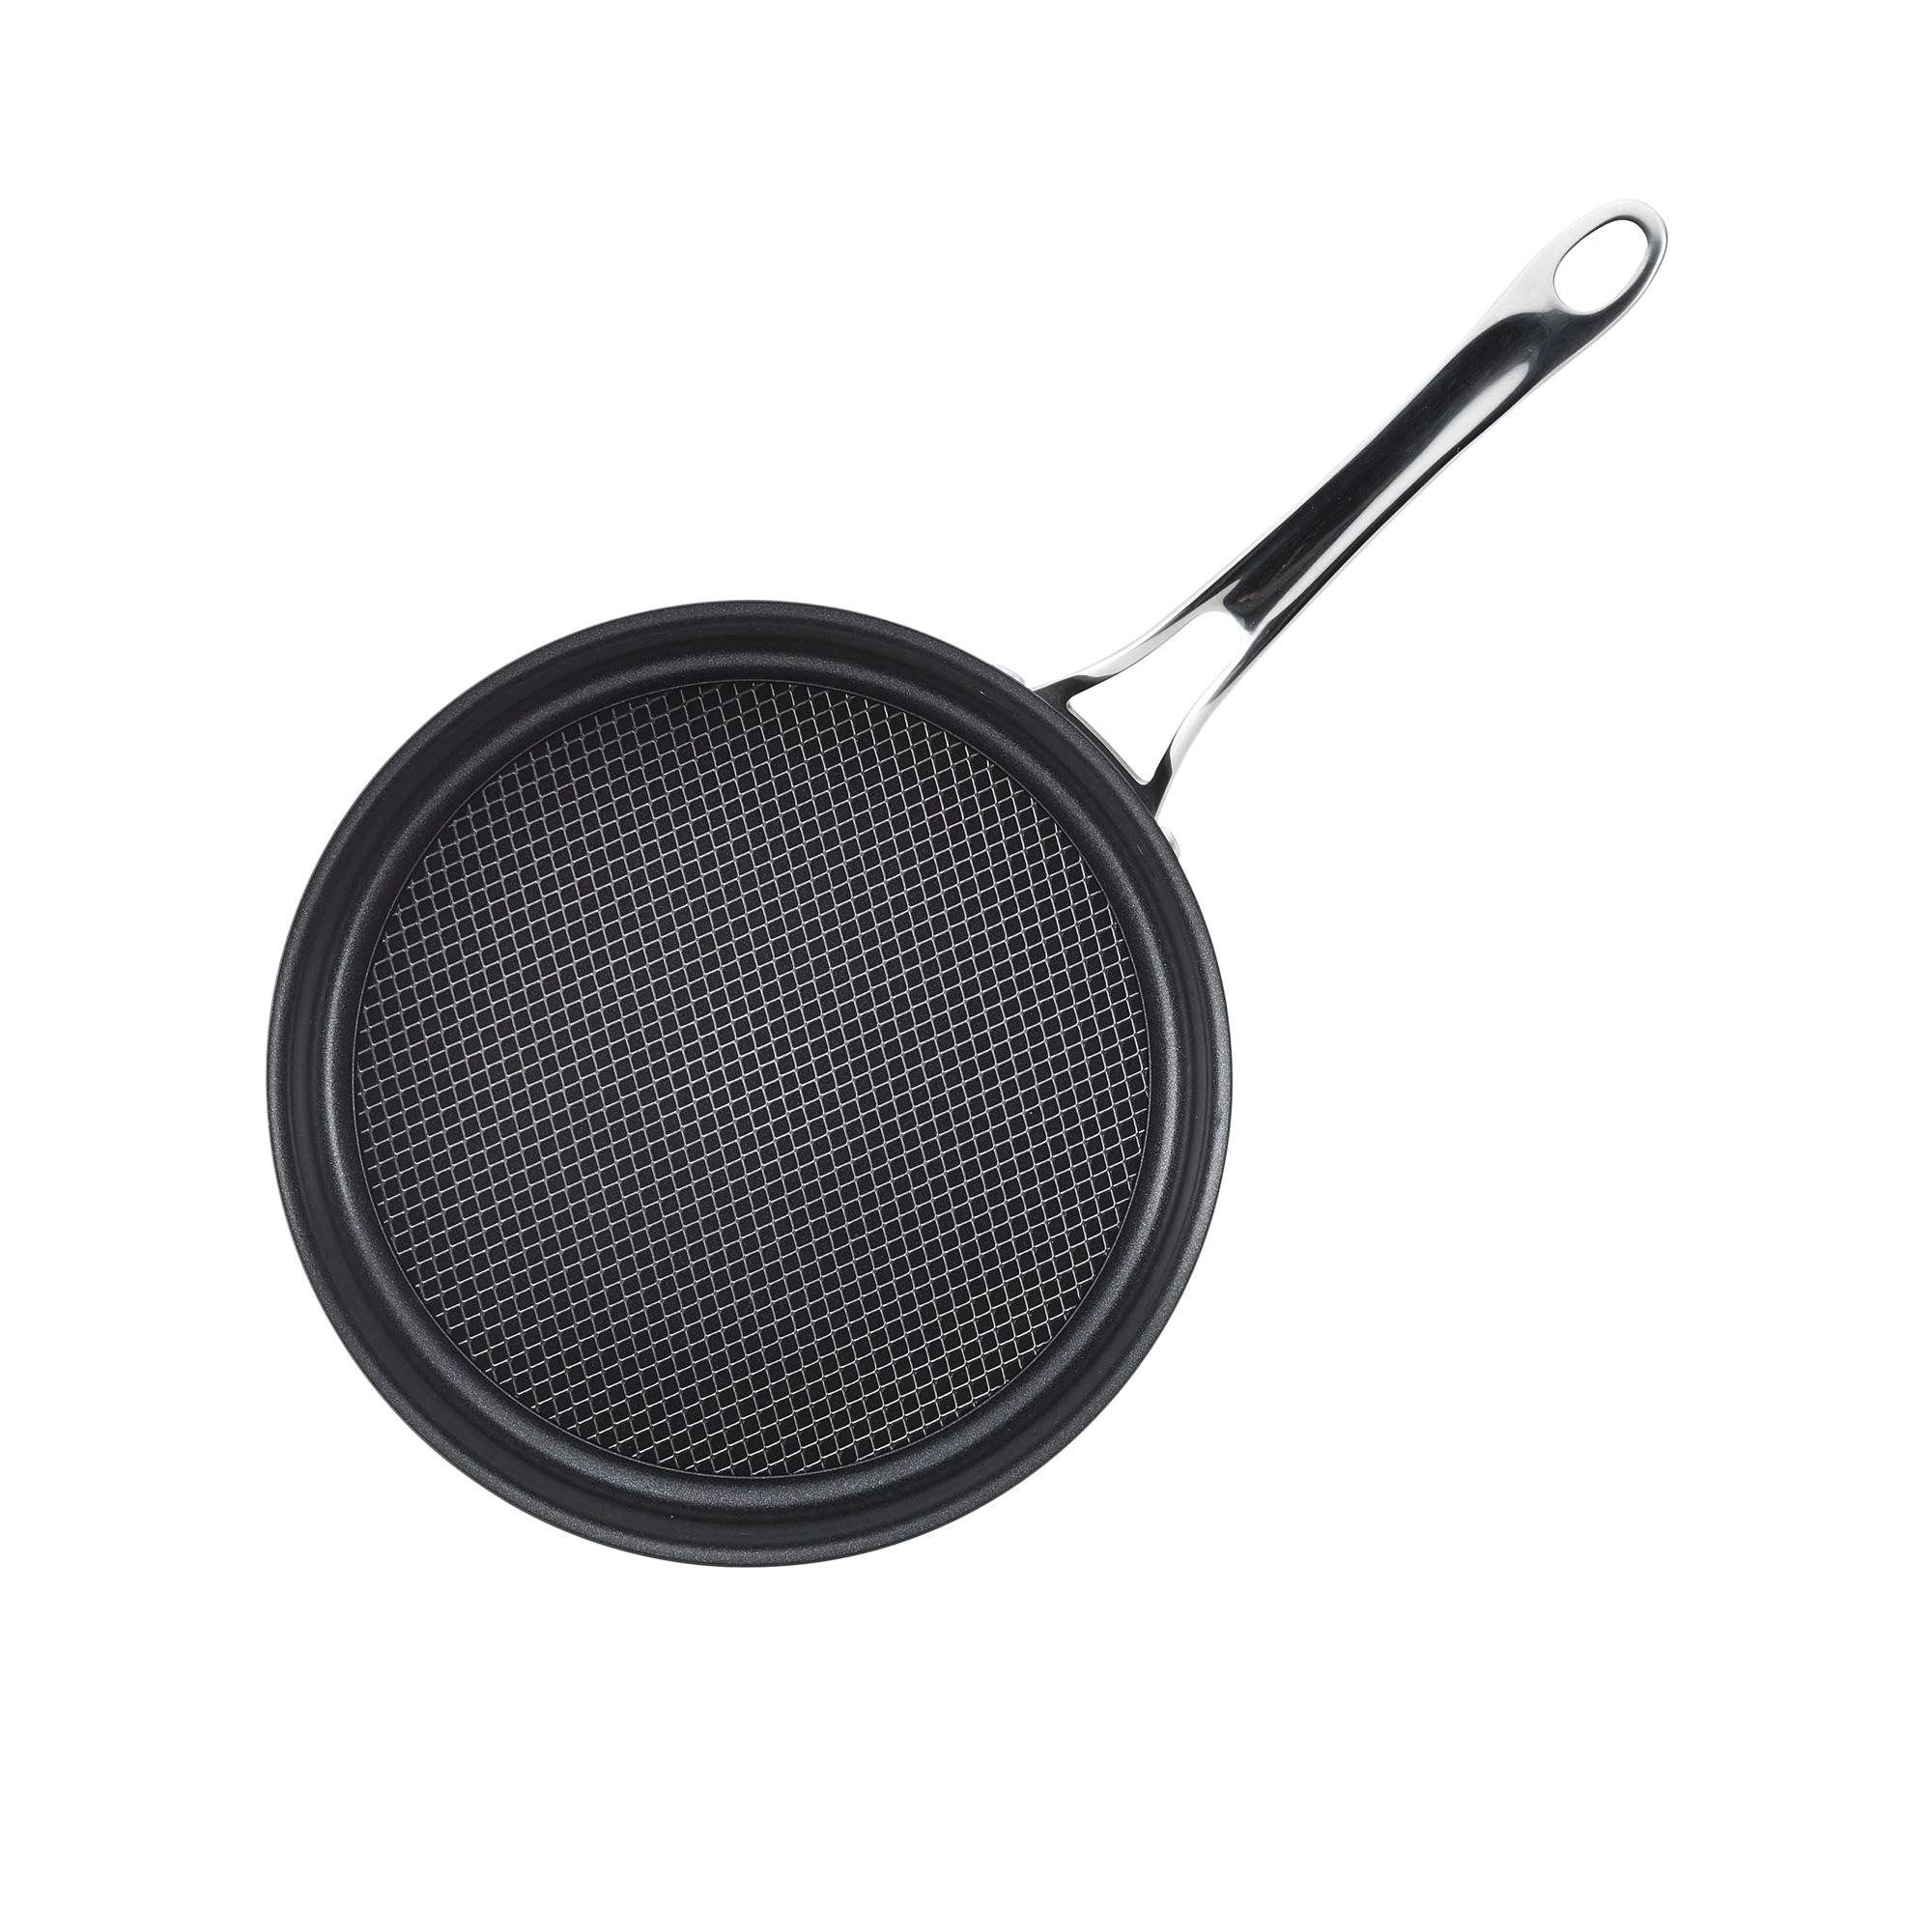 Anolon X Seartech Non Stick Saute Pan with Lid 24cm Image 3